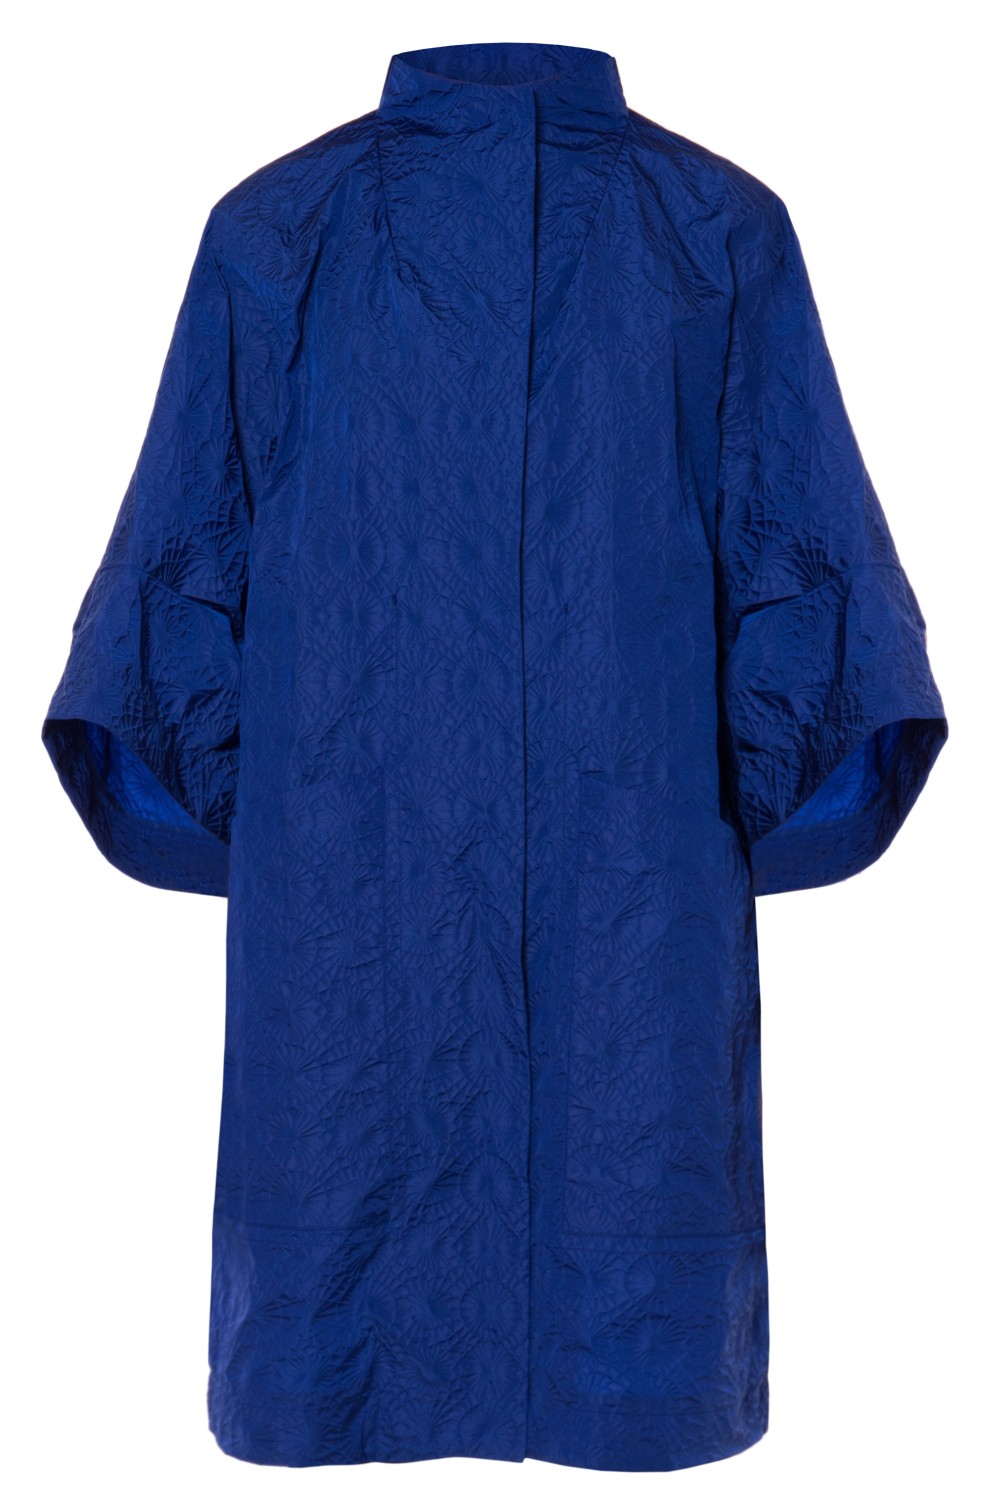 shop Ahirain Saldi Cappotti: Cappotti Ahirain, modello kimono, manica 3/4, media lunghezza, chiusura davanti con bottoni automatici, tasche laterali, color blu elettrico.

Composizione: 100% poliammide. number 2099